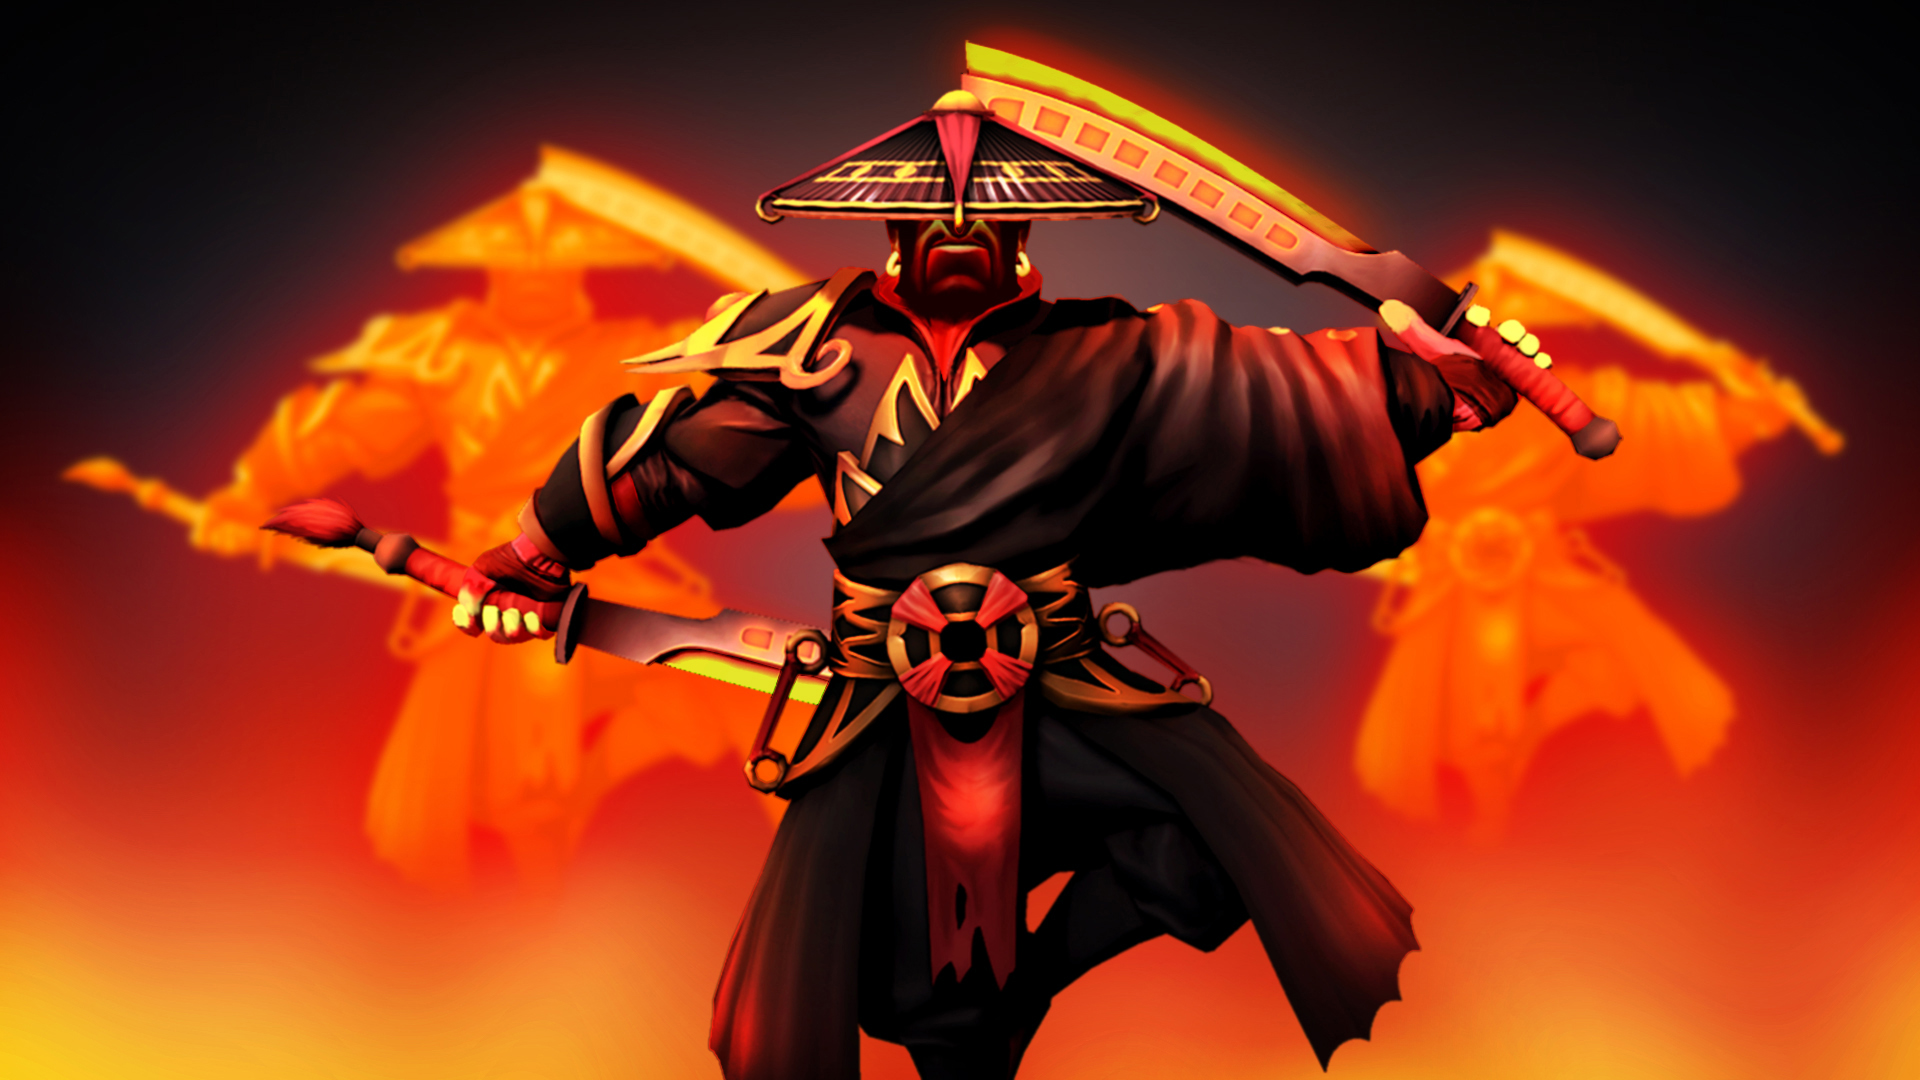 Free download wallpaper Dota 2, Warrior, Samurai, Sword, Video Game, Dota, Ember Spirit (Dota 2) on your PC desktop